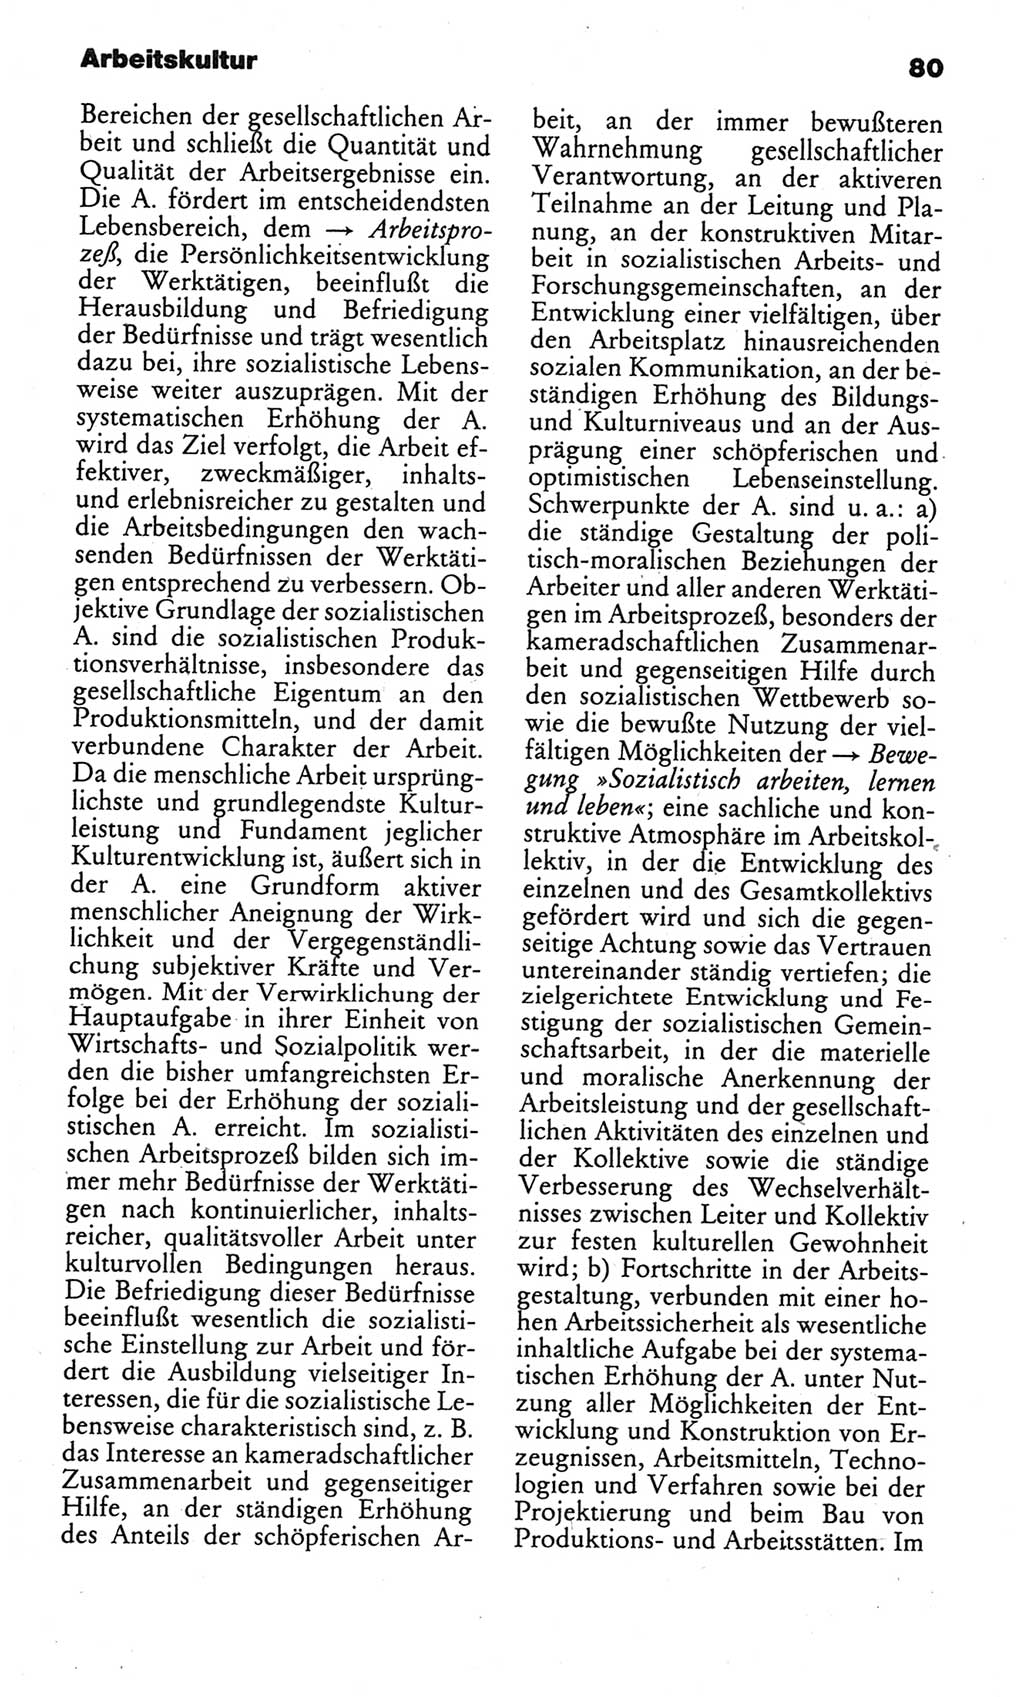 Kleines politisches Wörterbuch [Deutsche Demokratische Republik (DDR)] 1986, Seite 80 (Kl. pol. Wb. DDR 1986, S. 80)